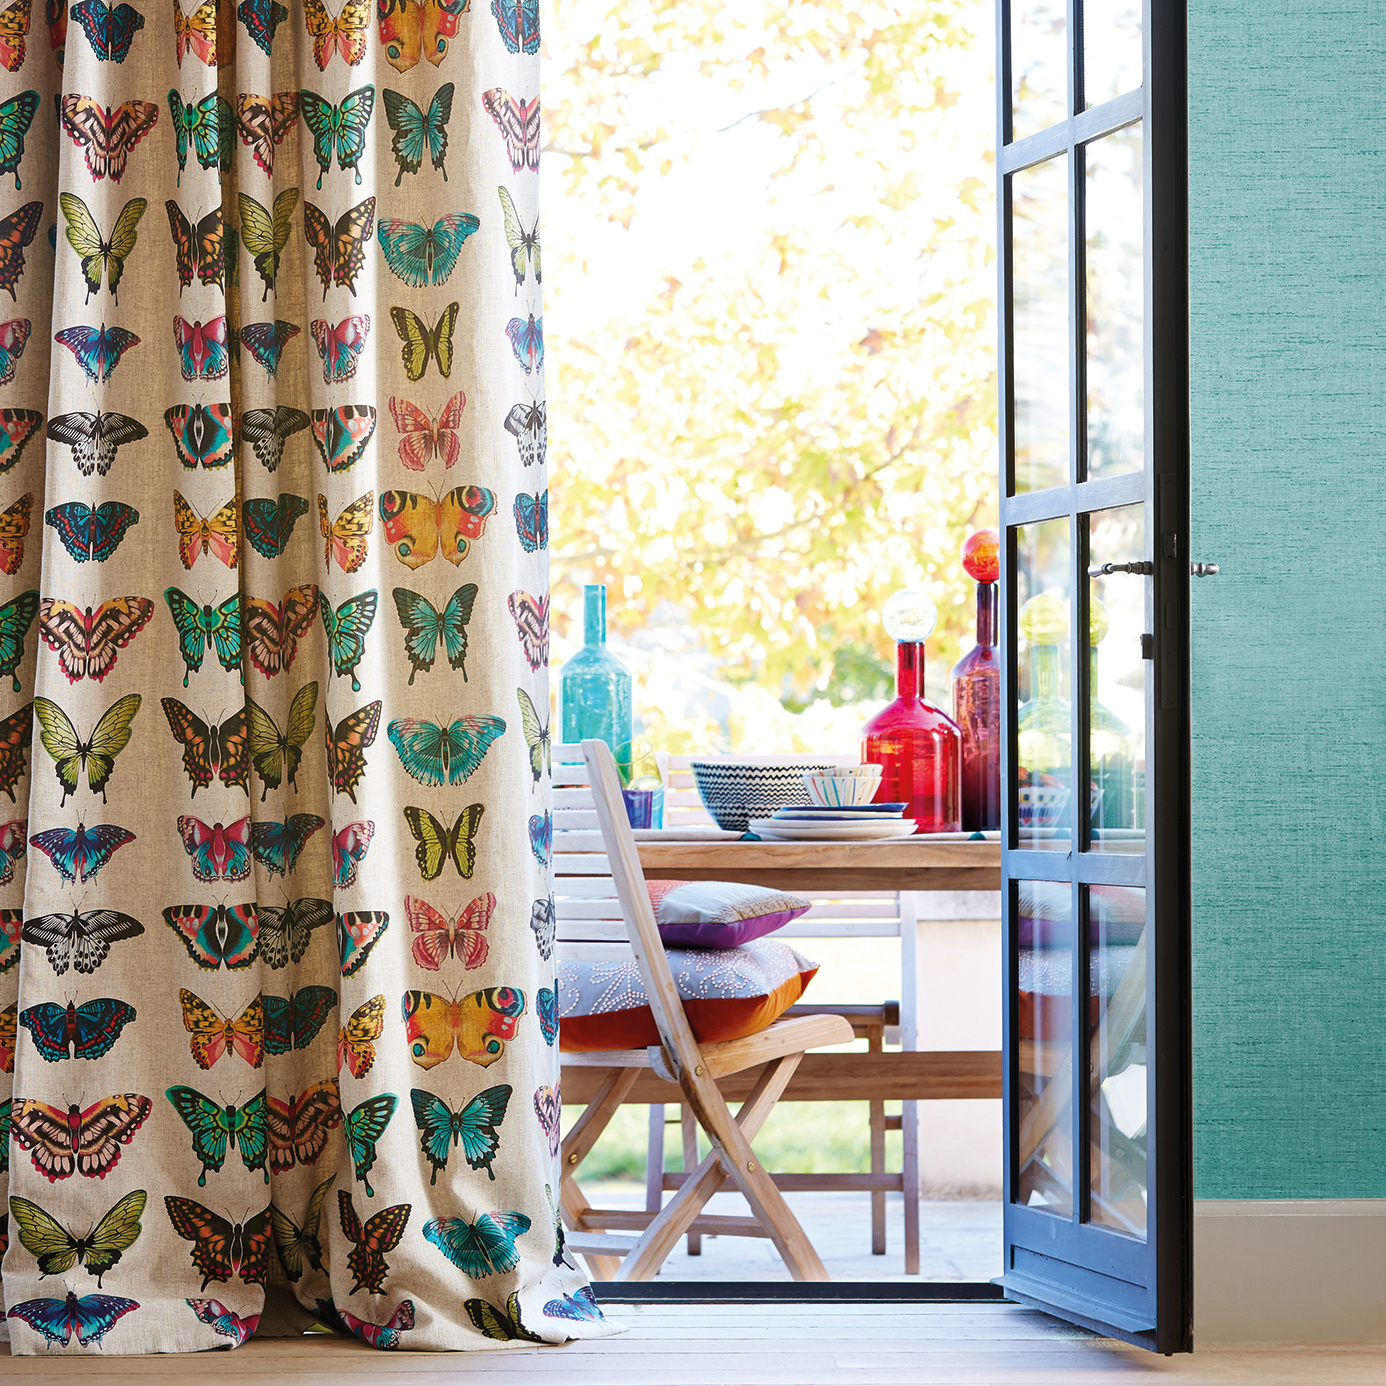 Papilio Flamingo / Papaya / Loganberry Fabric by HAR